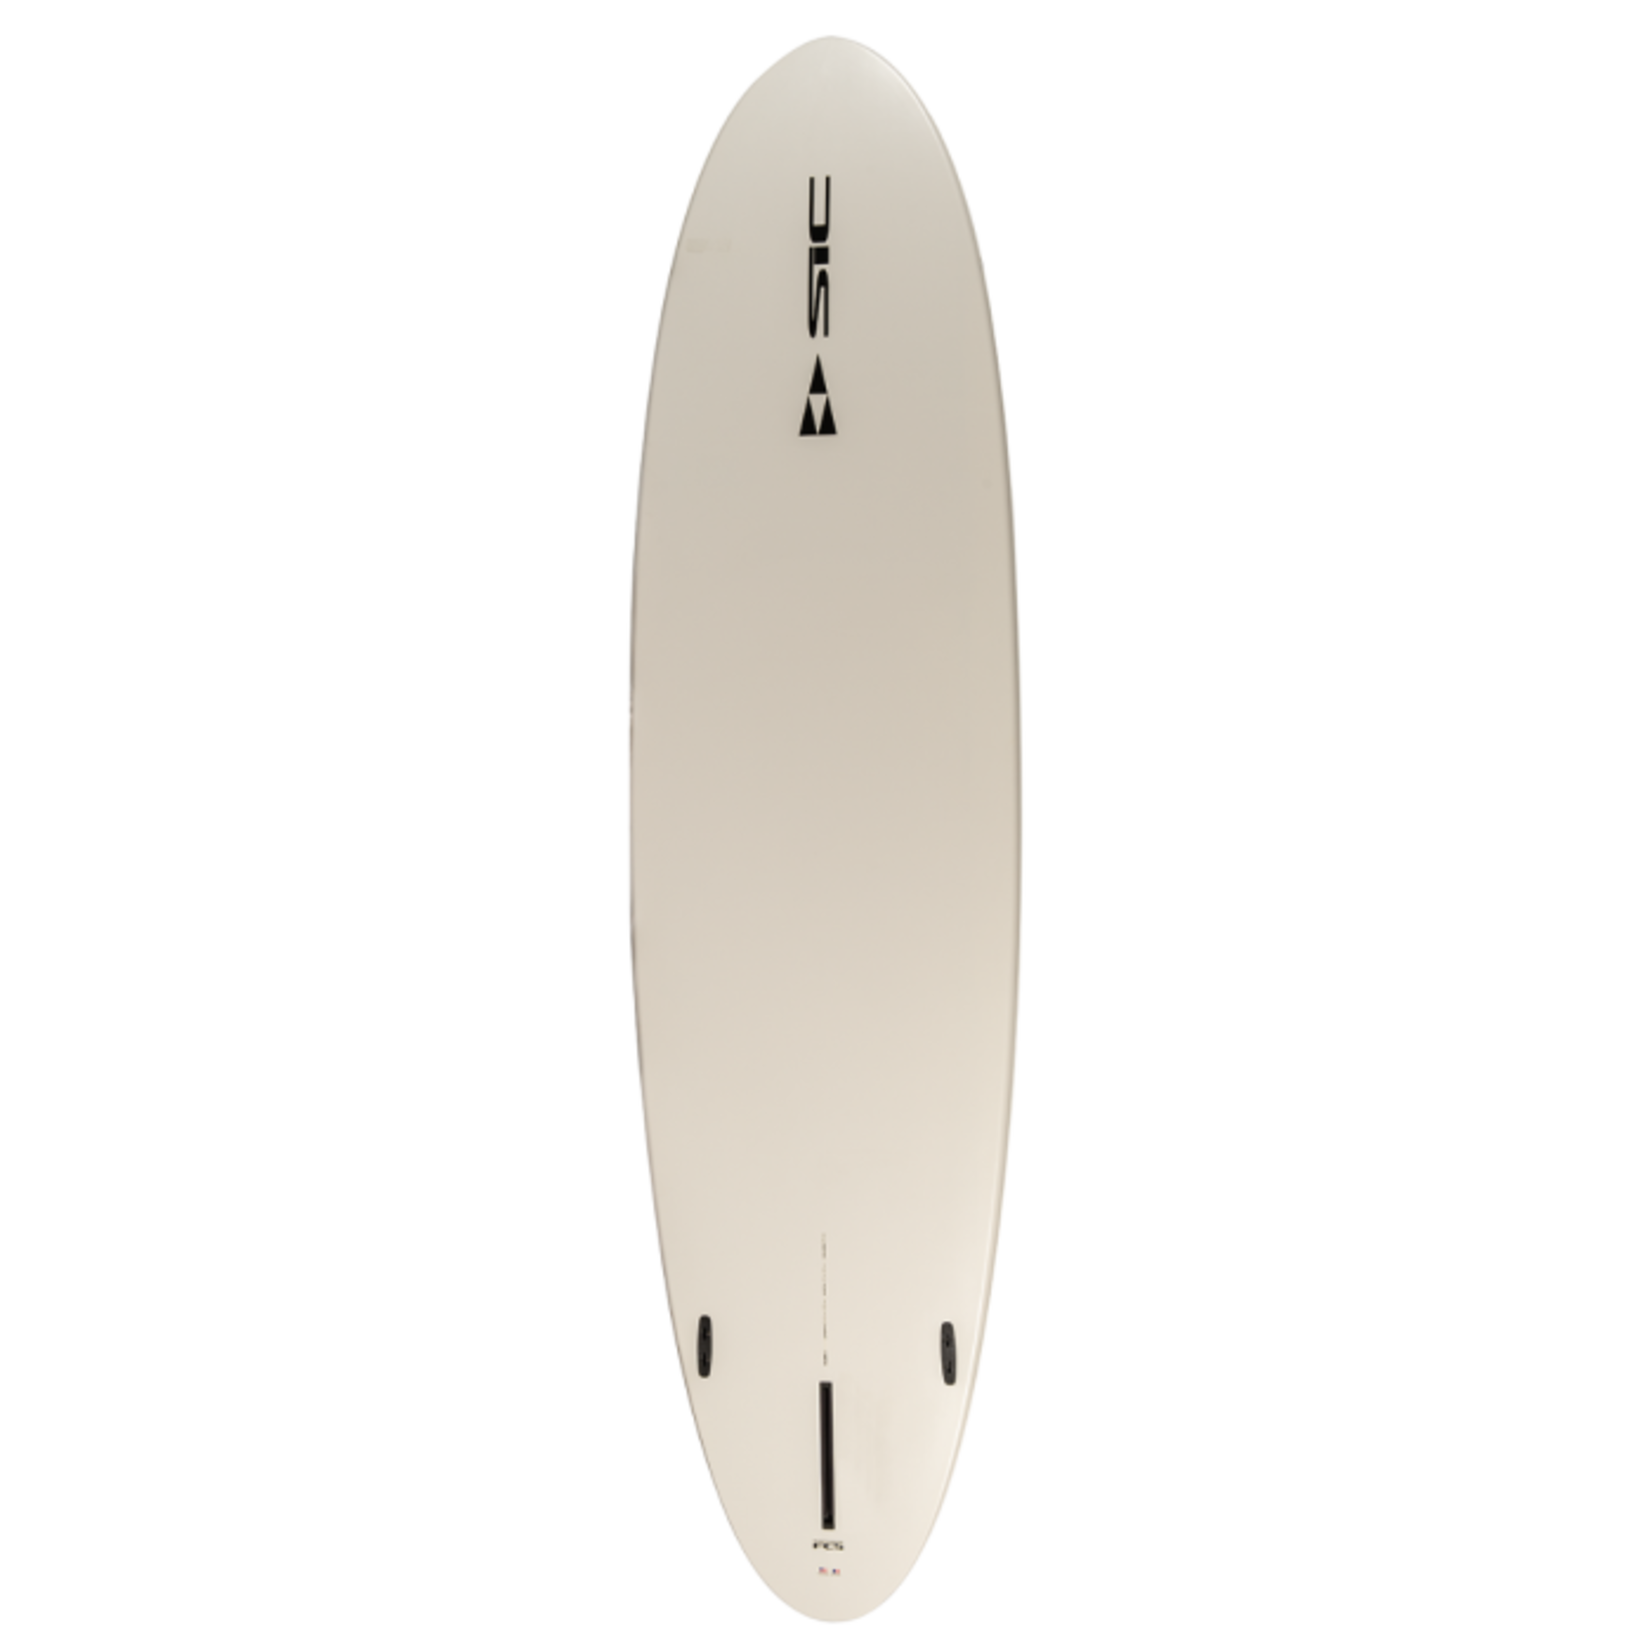 SIC Planche à pagaie rigide Tao Surf 10.6 x 31.5 Ace-tec de SIC